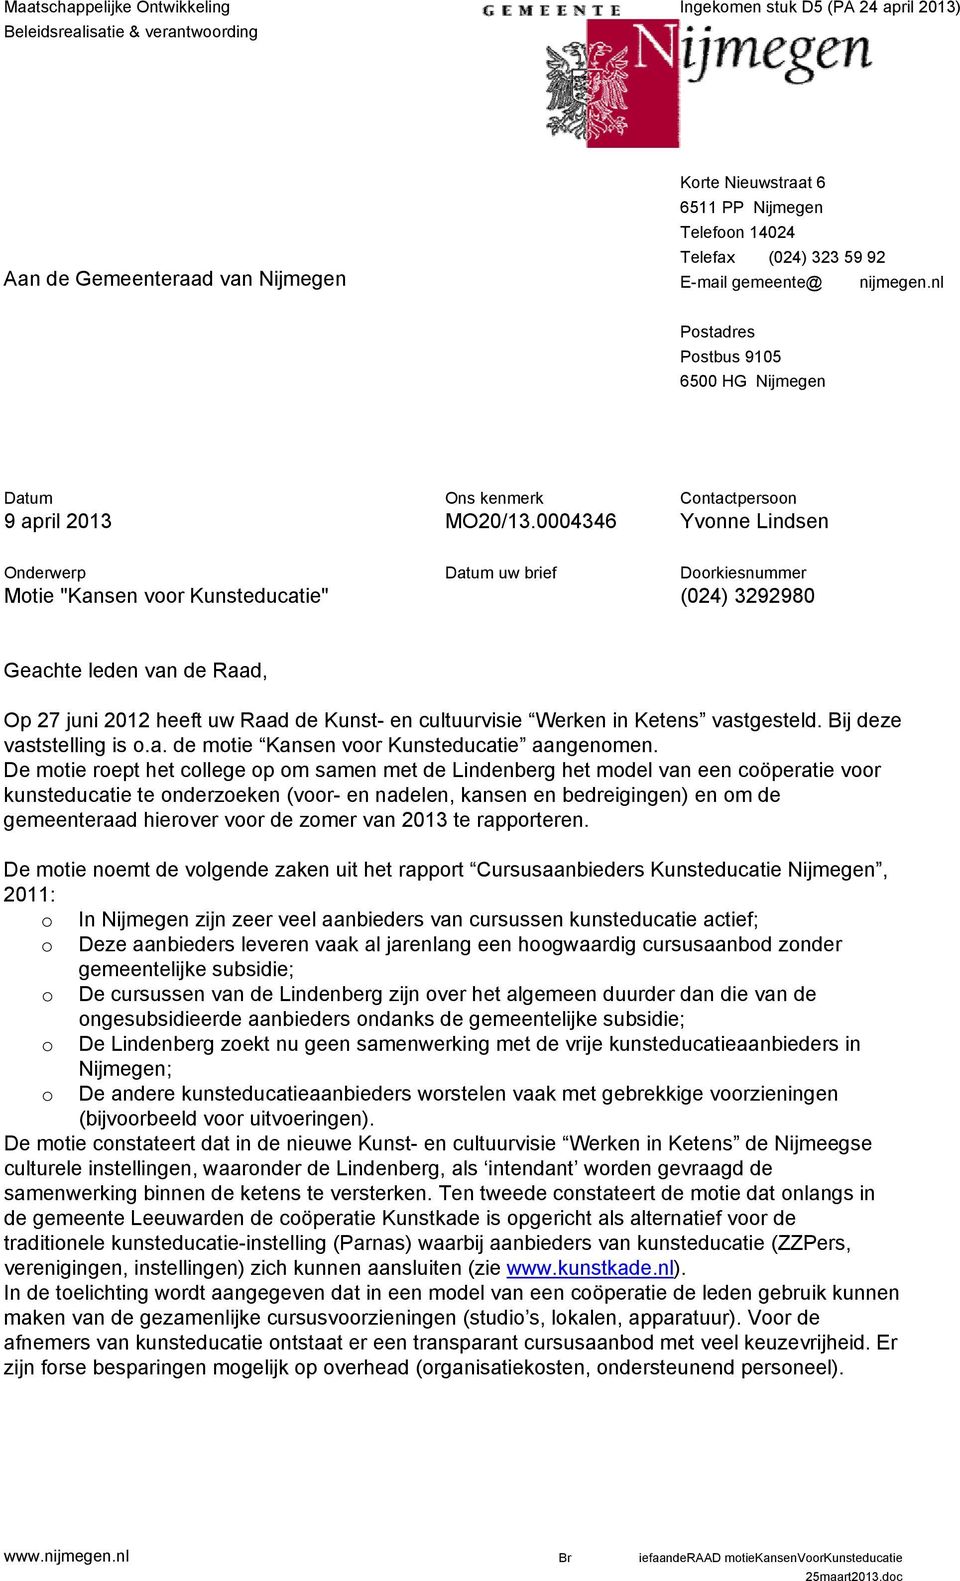 0004346 Datum uw brief Contactpersoon Yvonne Lindsen Doorkiesnummer (024) 3292980 Geachte leden van de Raad, Op 27 juni 2012 heeft uw Raad de Kunst- en cultuurvisie Werken in Ketens vastgesteld.